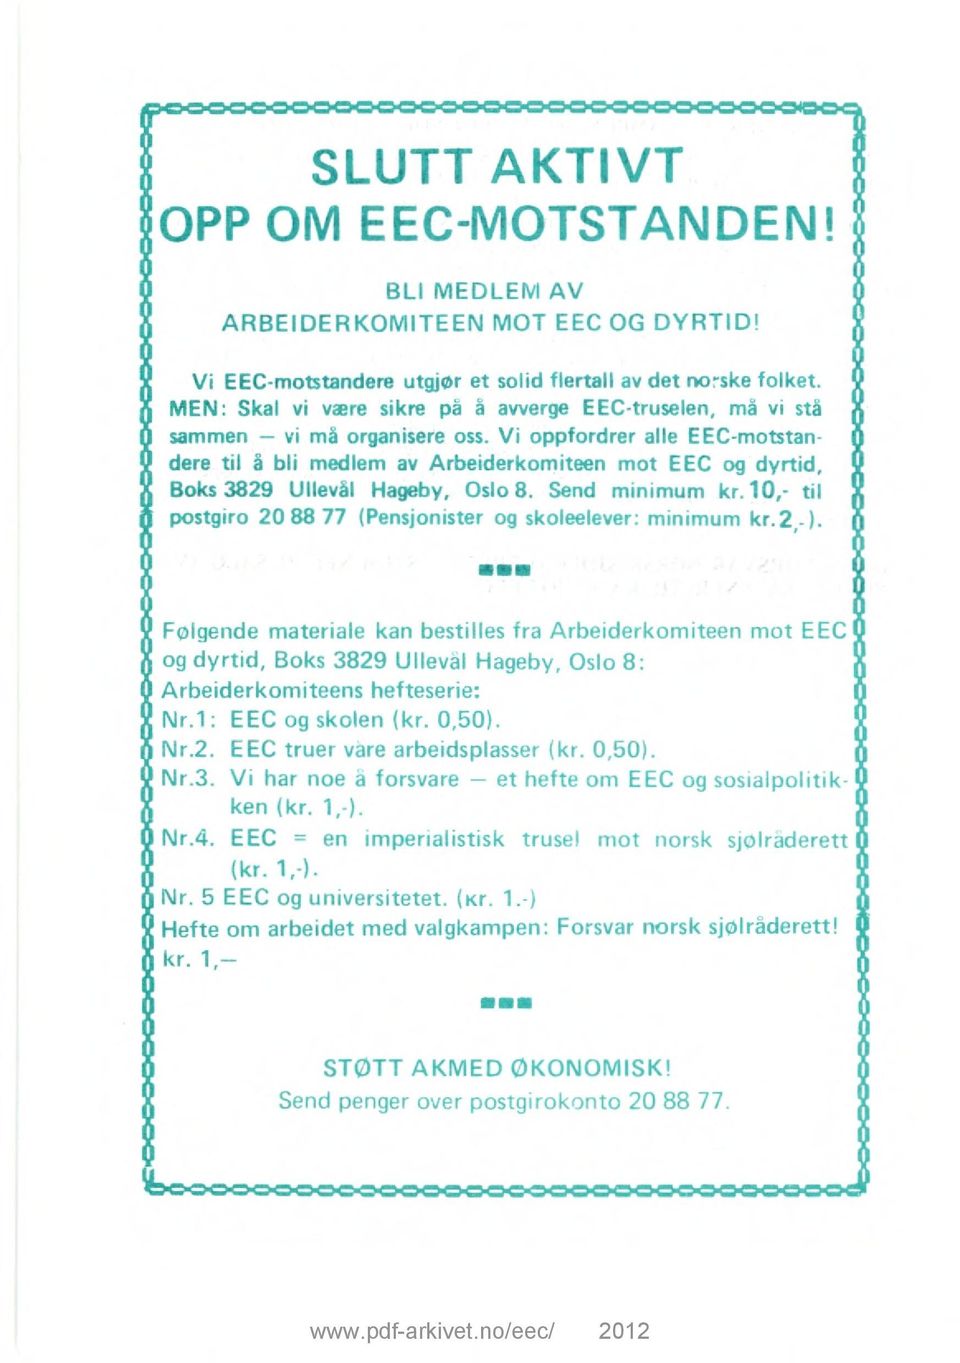 Vi oppfordrer alle EEC-motstandere til å bli medlem av Arbeiderkomiteen mot EEC og dyrtid, Boks 3829 Ullevål Hageby, Oslo 8. Send minimum kr.